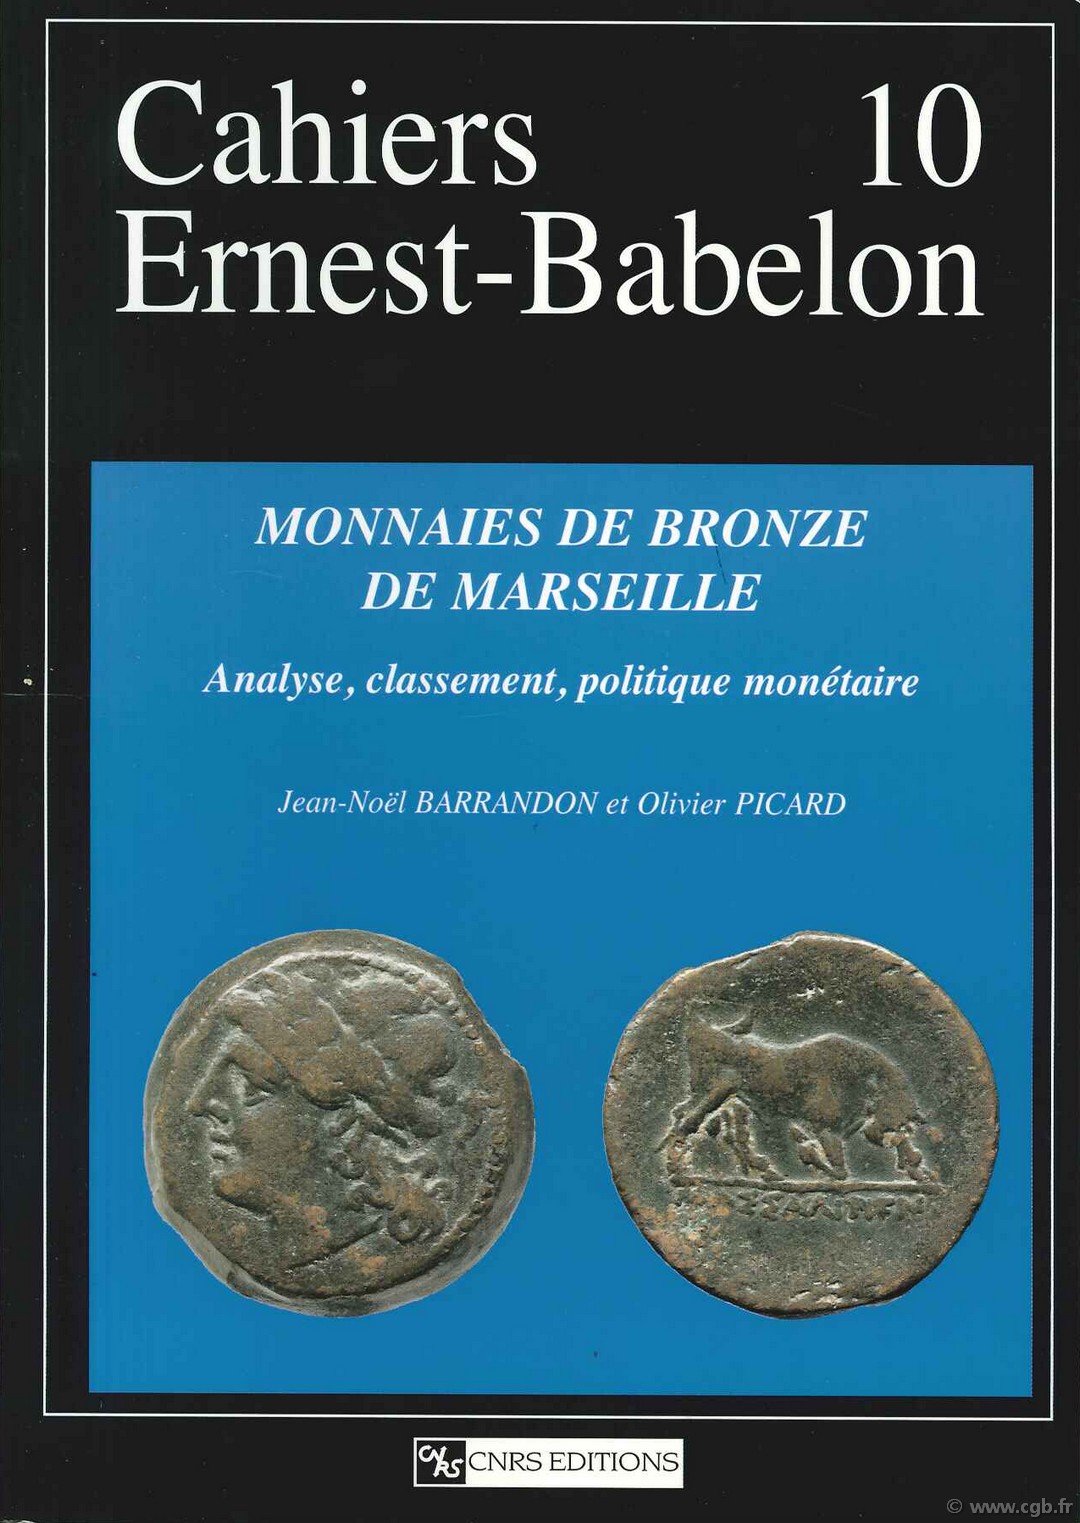 Cahiers Ernest-Babelon 10, Monnaies de bronze de Marseille - Analyse, classement, politique monétaire BARRANDON Jean-Noël, PICARD Olivier